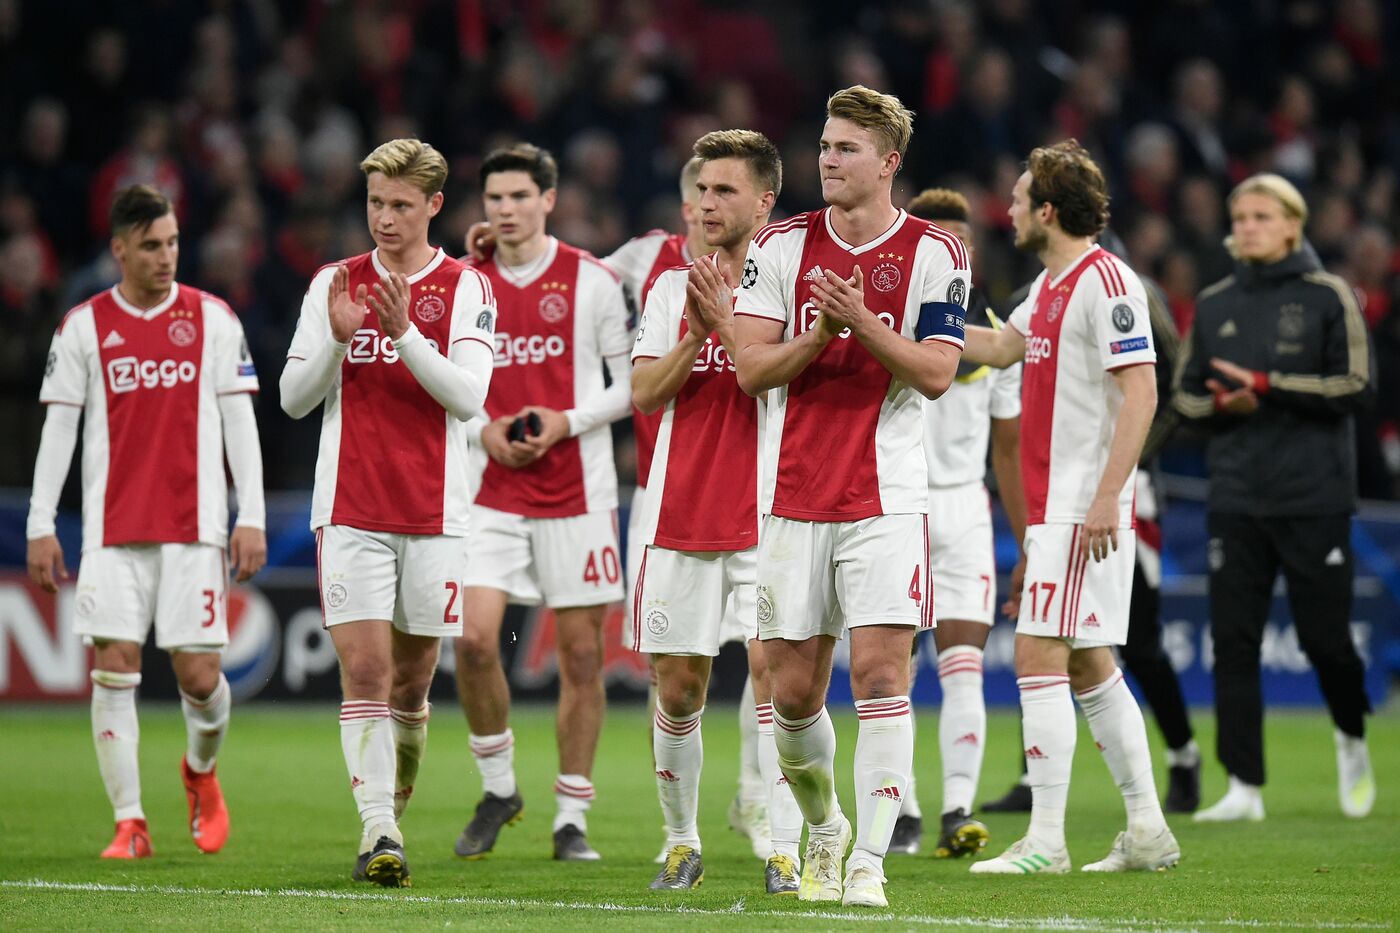 KNVB Beker, Willem II-Ajax 5 maggio: analisi e pronostico della finale della coppa nazionale olandese